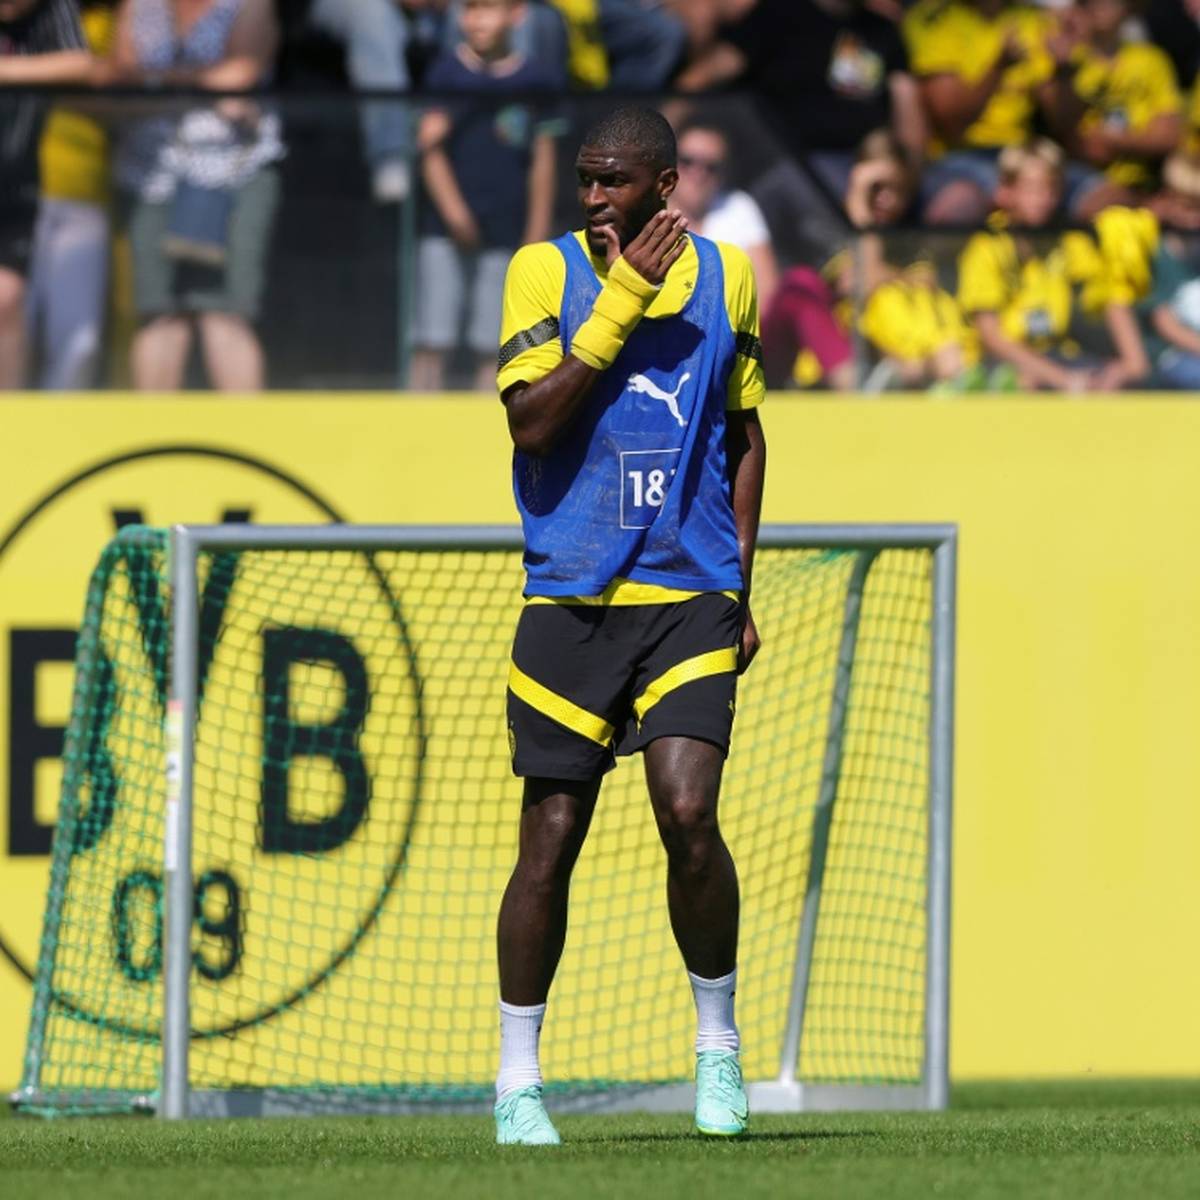 Gerade erst ist Anthony Modeste vom 1. FC Köln zu Borussia Dortmund gewechselt. Beim Spiel gegen den SC Freiburg könnte er schon sein Debüt feiern.